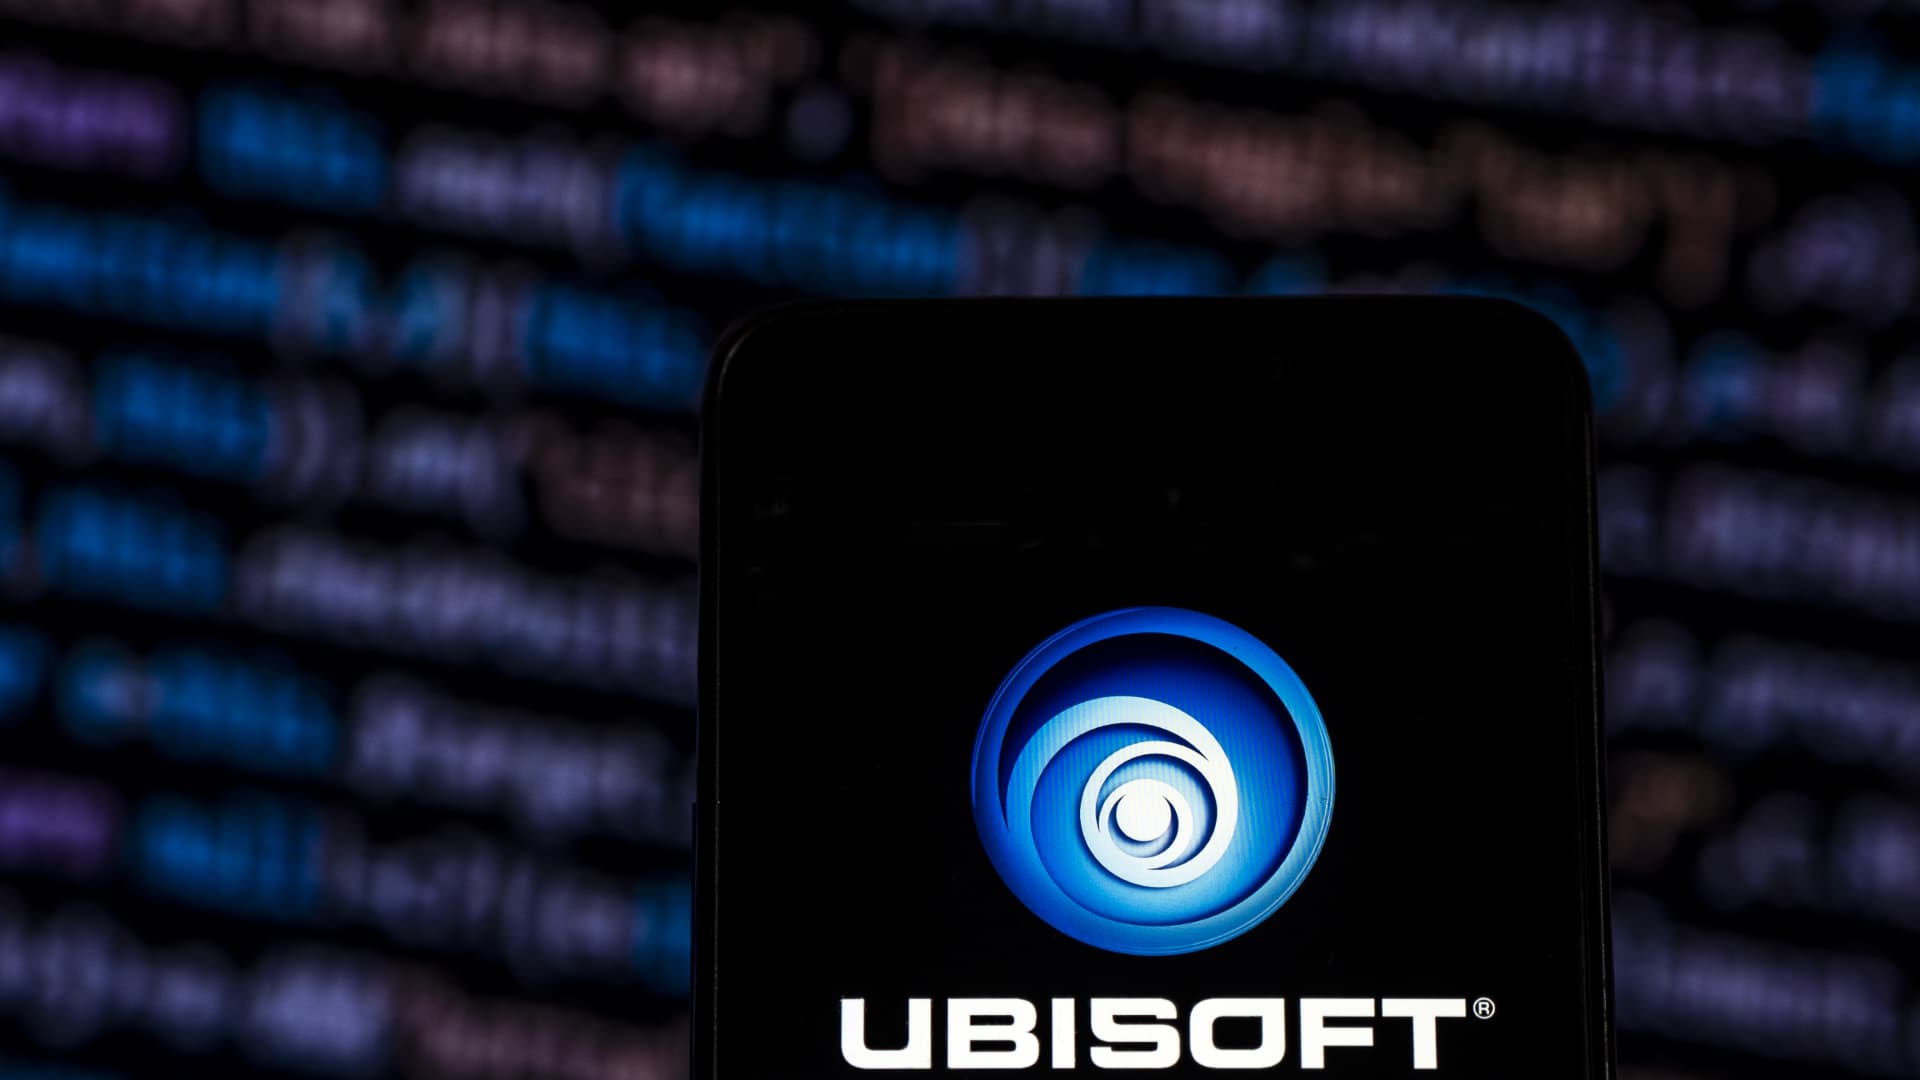 Ubisoft (UBI) Tanks Stock 21% nach Steuerungskürzung, Spiele abgebrochen